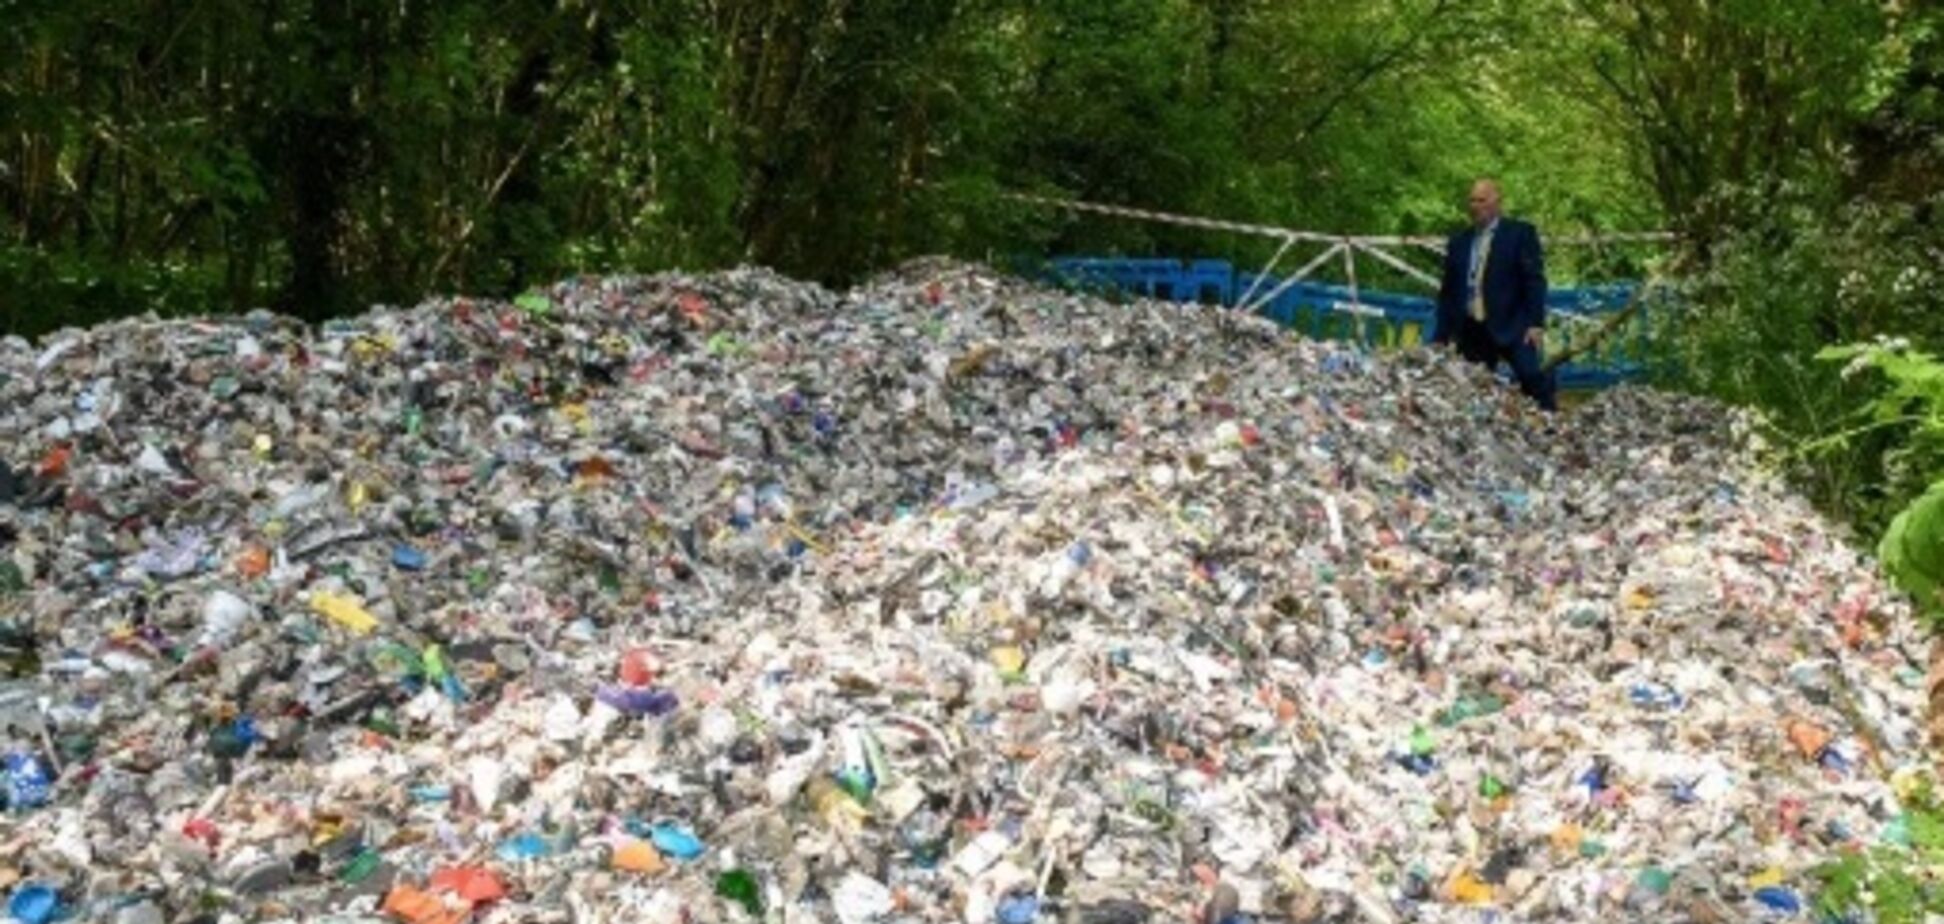 Миллионеров шокировала свалка мусора возле их живописной деревни